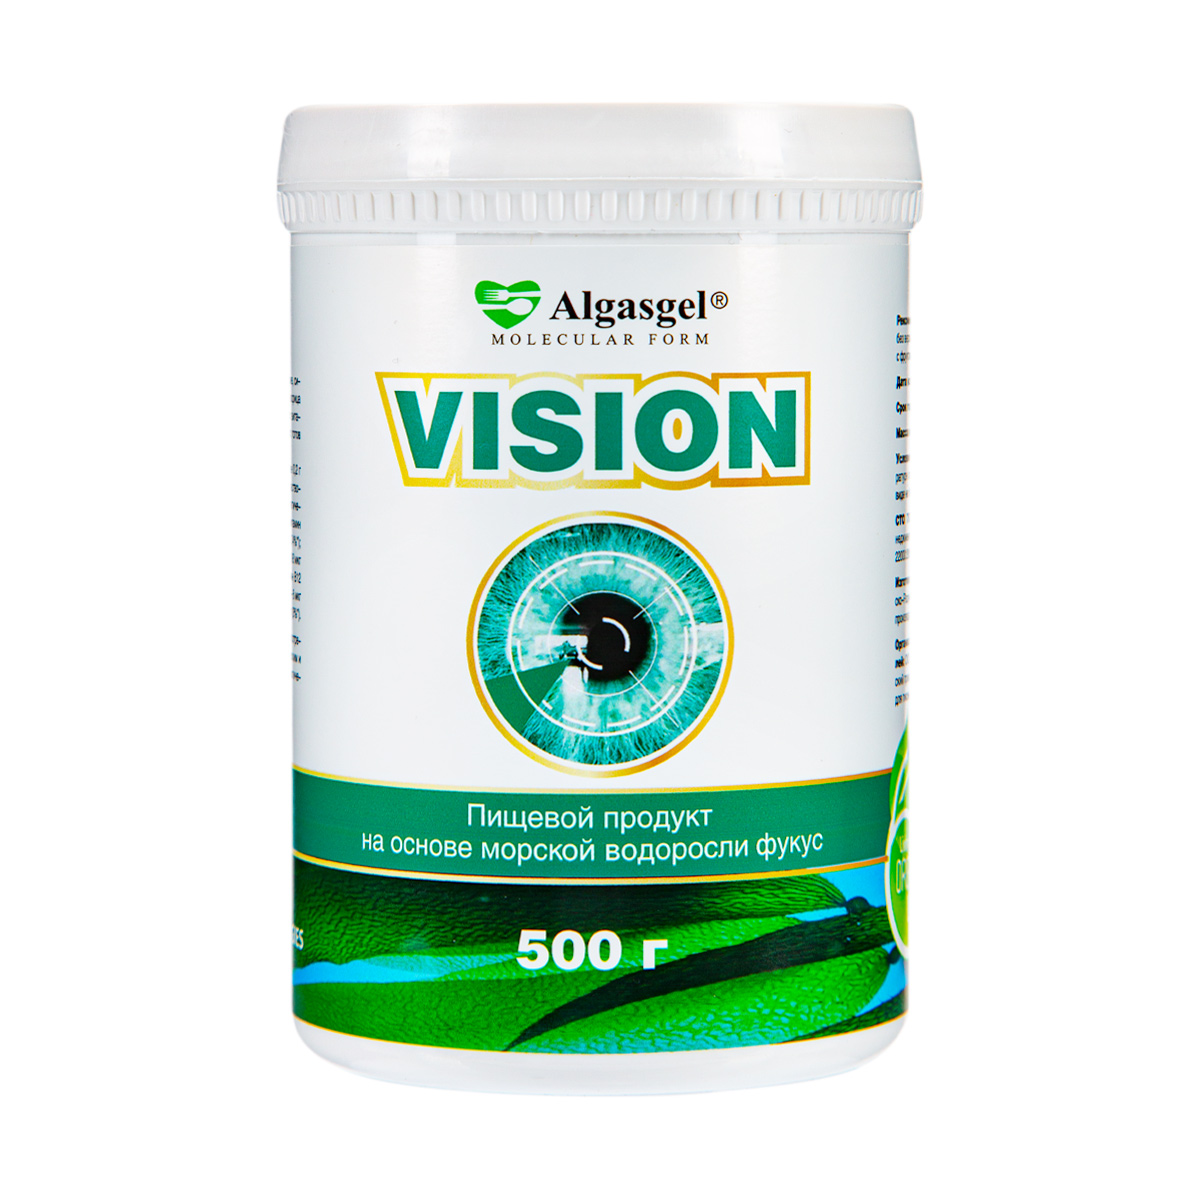 Algasgel Vision для здоровья глаз (500 г) algasgel artro для здоровья суставов и мышц 500 г